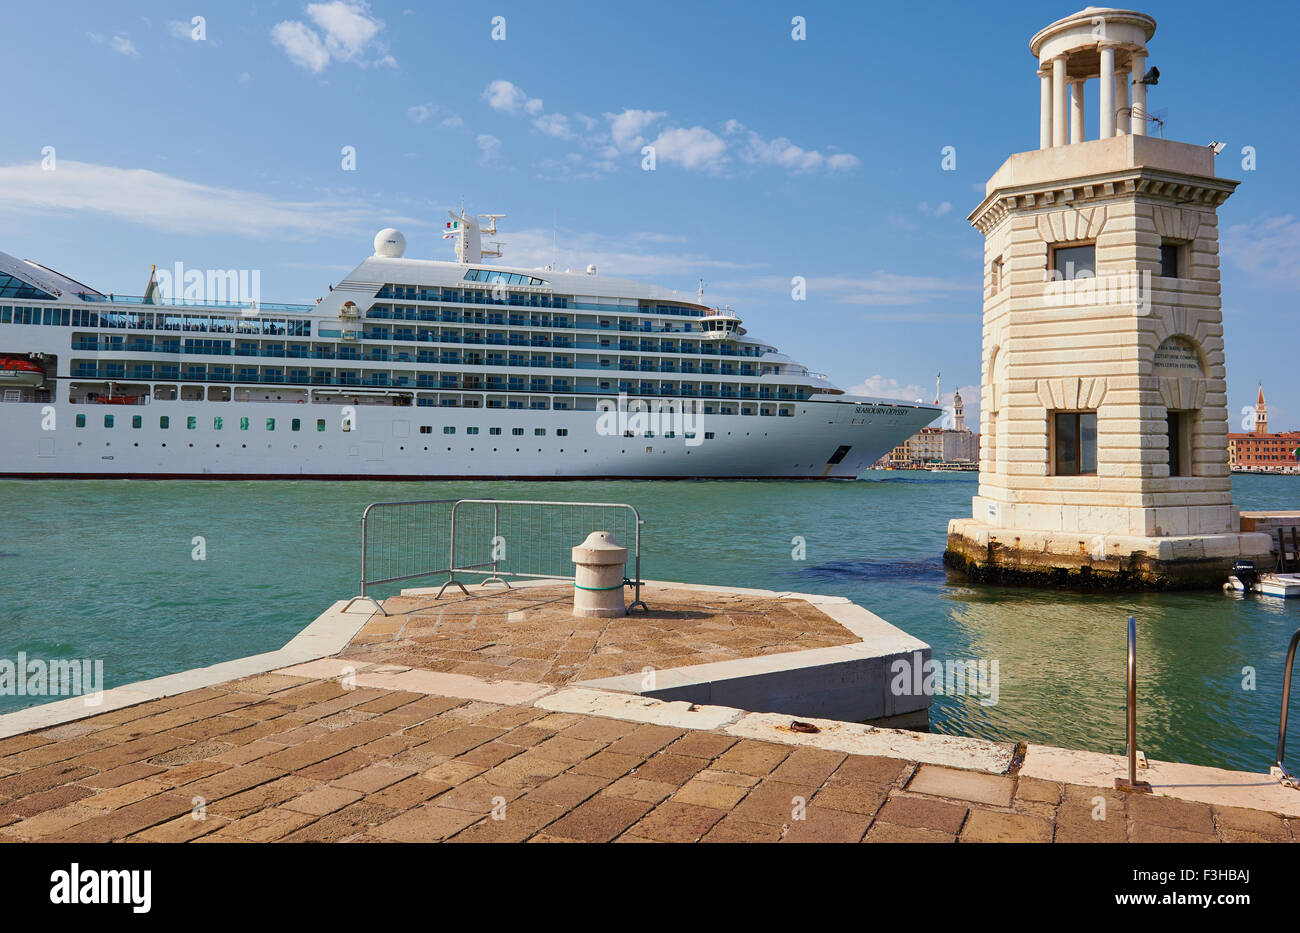 Gigantesca nave da crociera in Canal San Marco tra Venezia e San Giorgio Maggiore isola Veneto Italia Europa Foto Stock